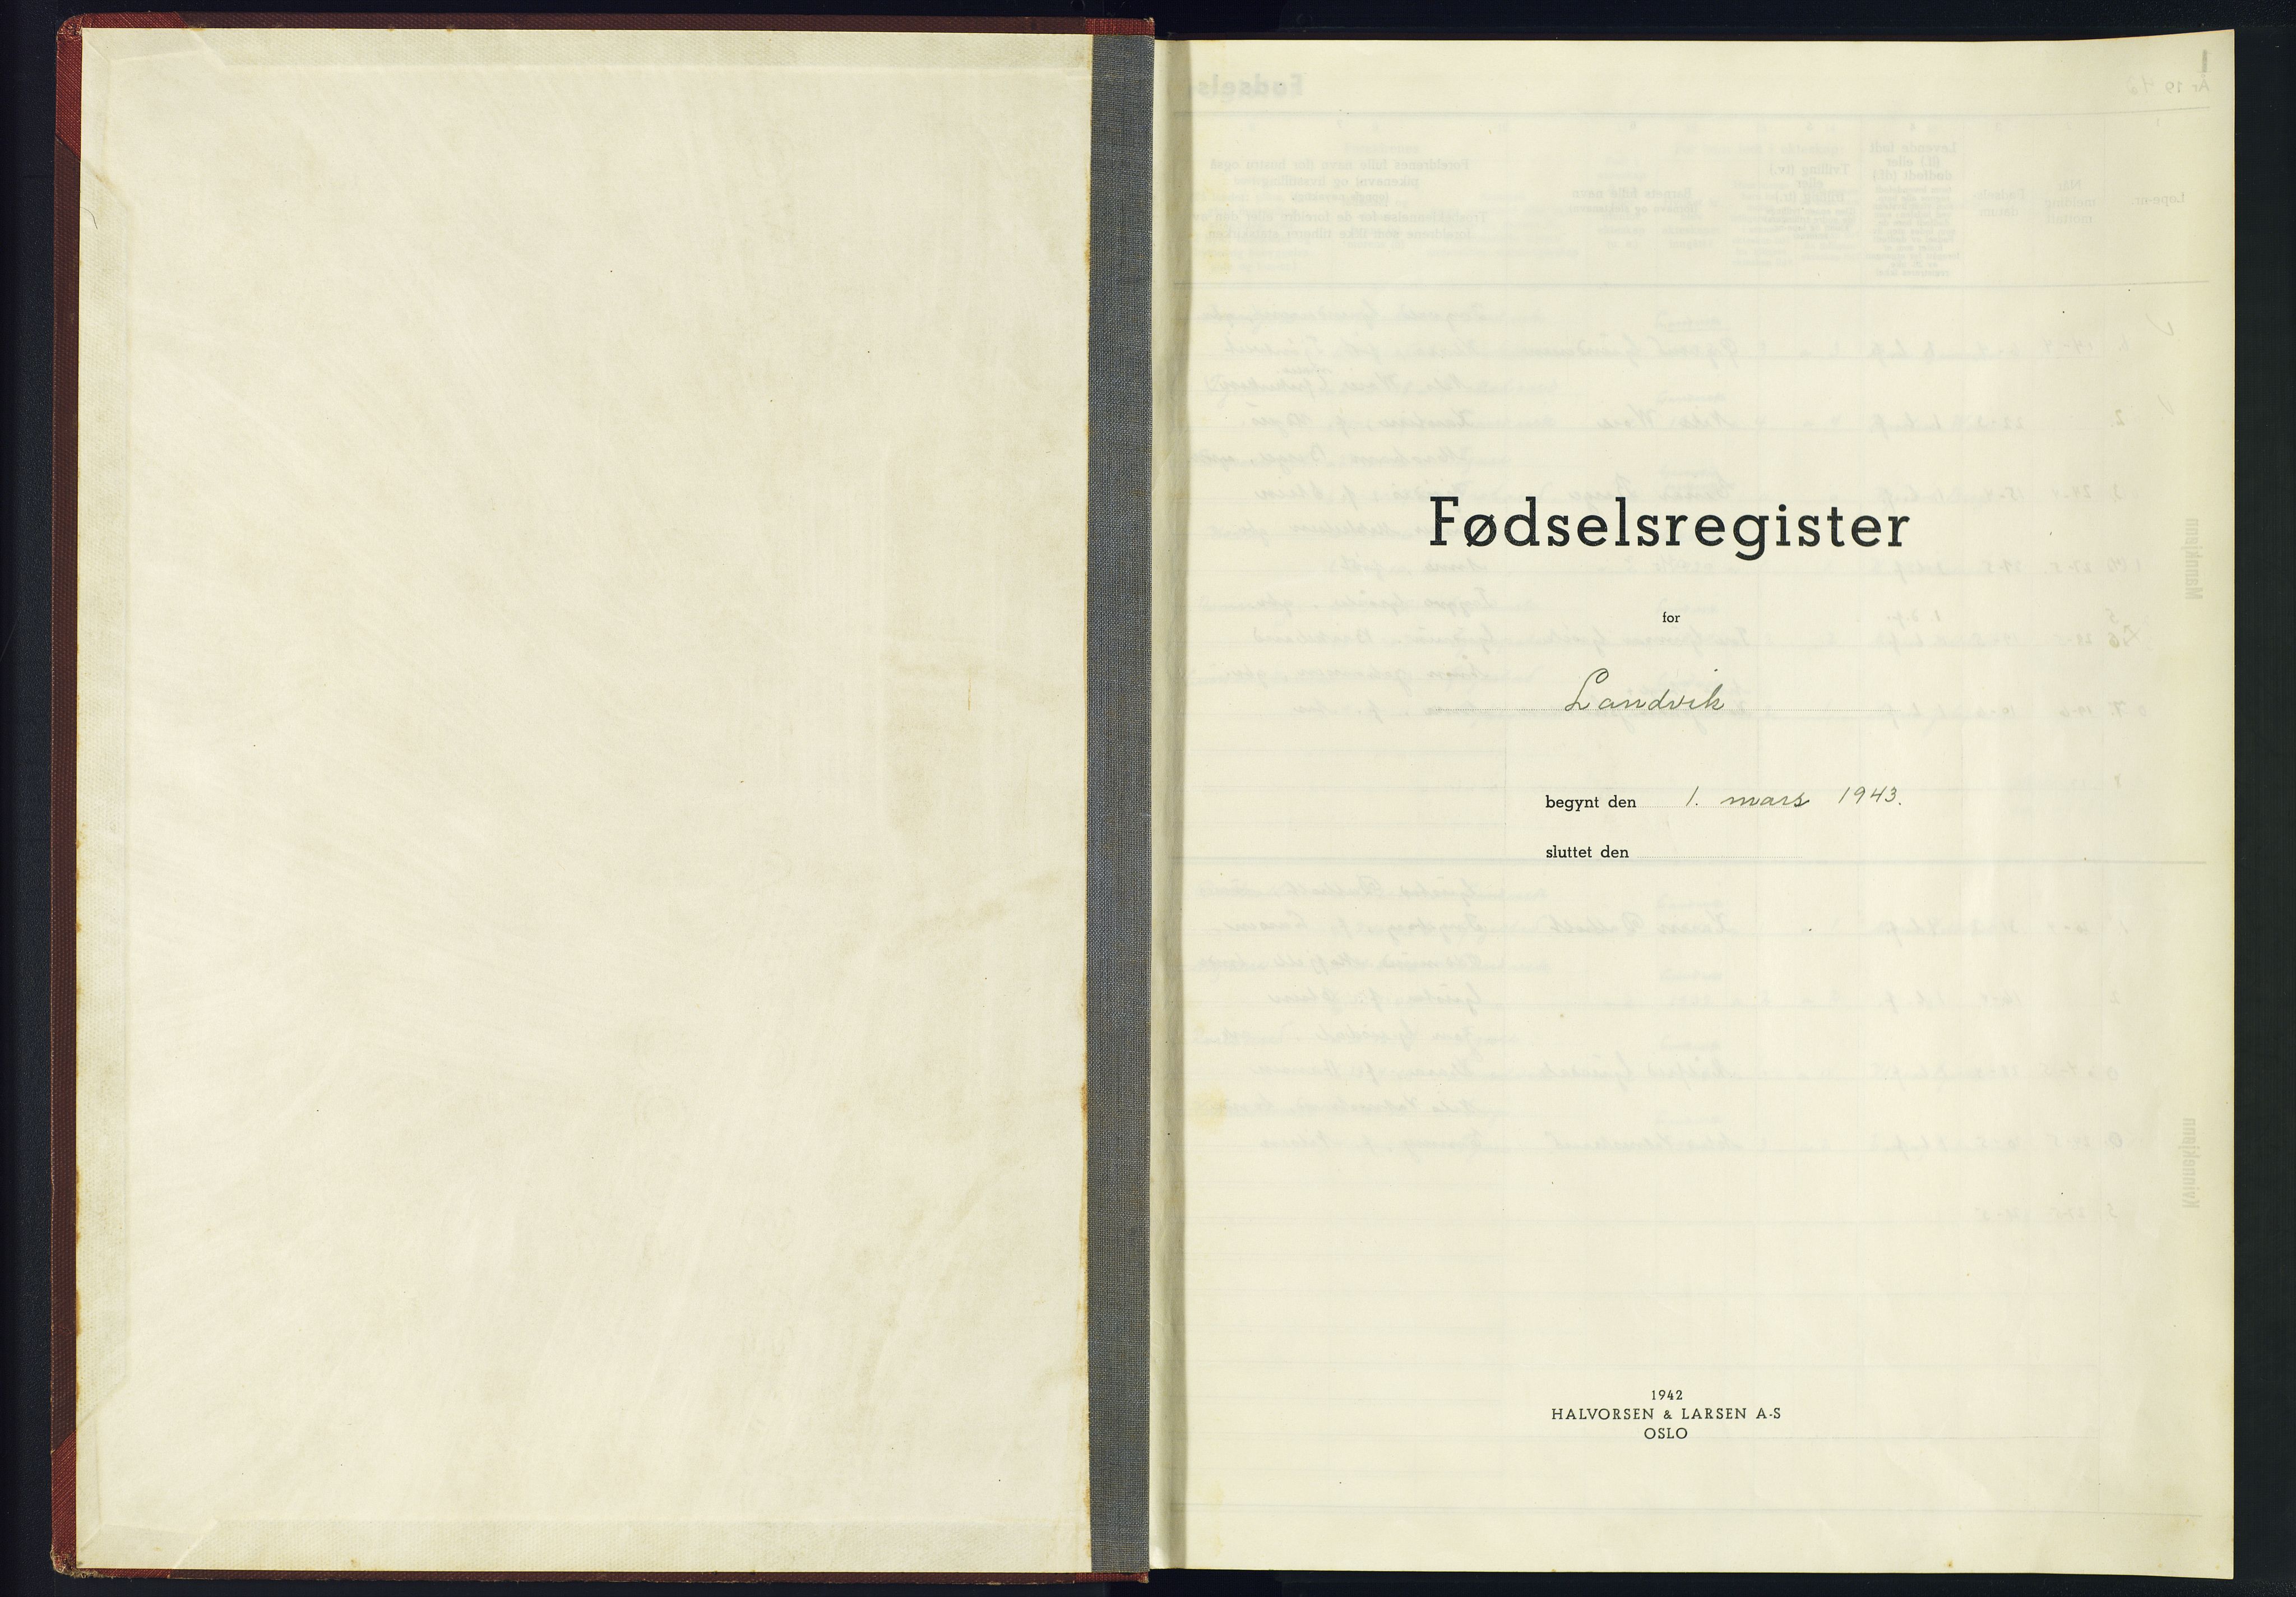 Hommedal sokneprestkontor, SAK/1111-0023/J/Jf/L0001: Fødselsregister nr. 1, 1943-1945